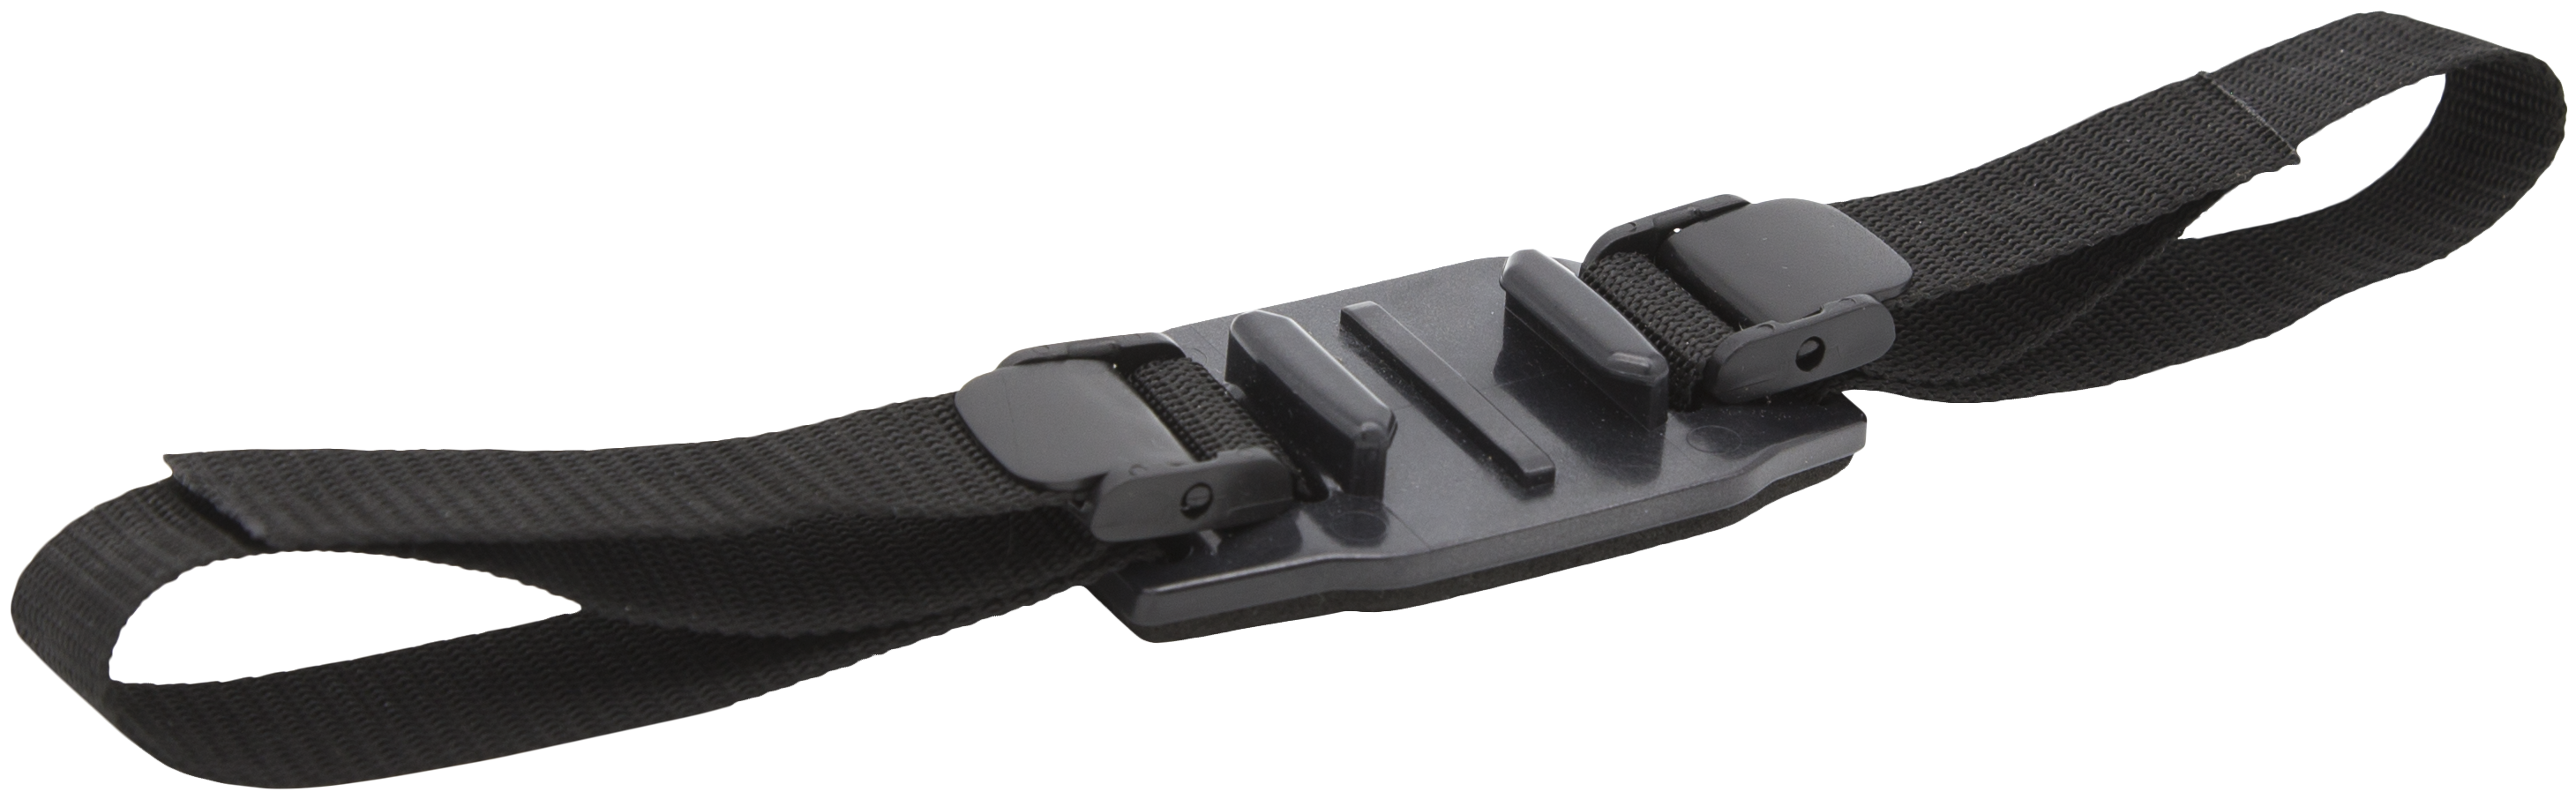 רצועת חיבור למצלמת GoPro לקסדת אופניים SP Gadgets - צבע שחור